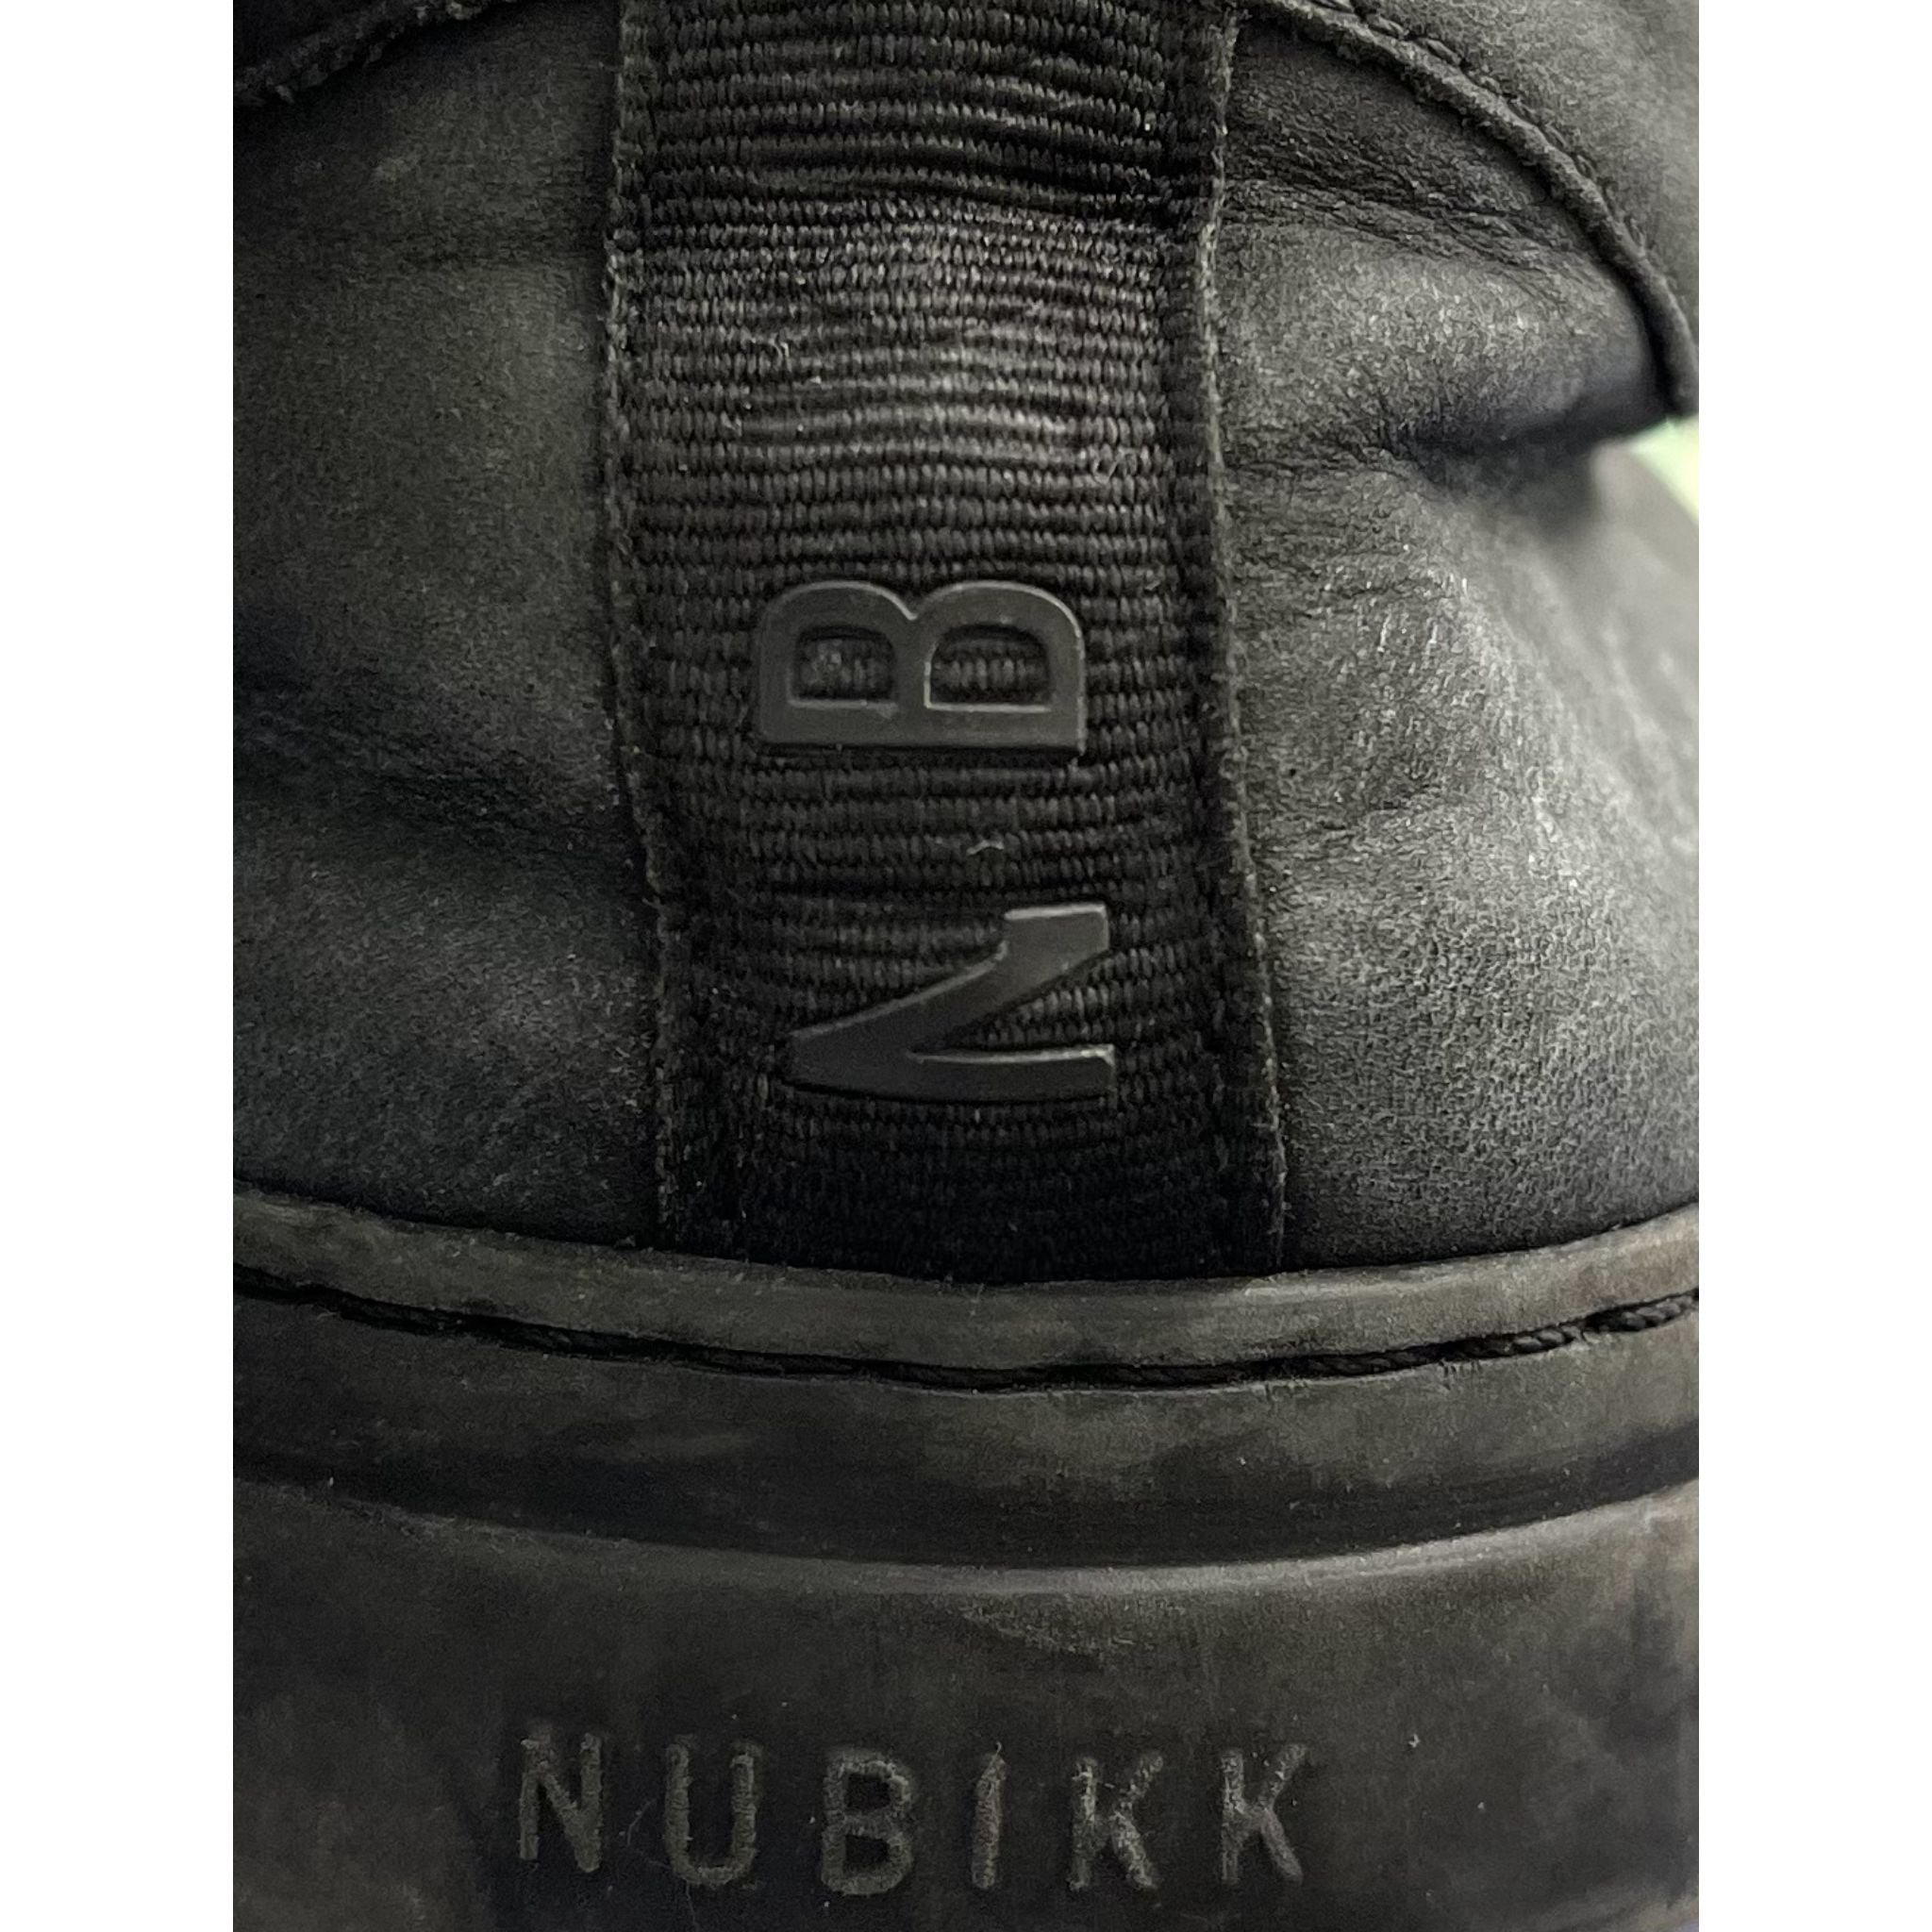 NUBIKK Black Sneakers